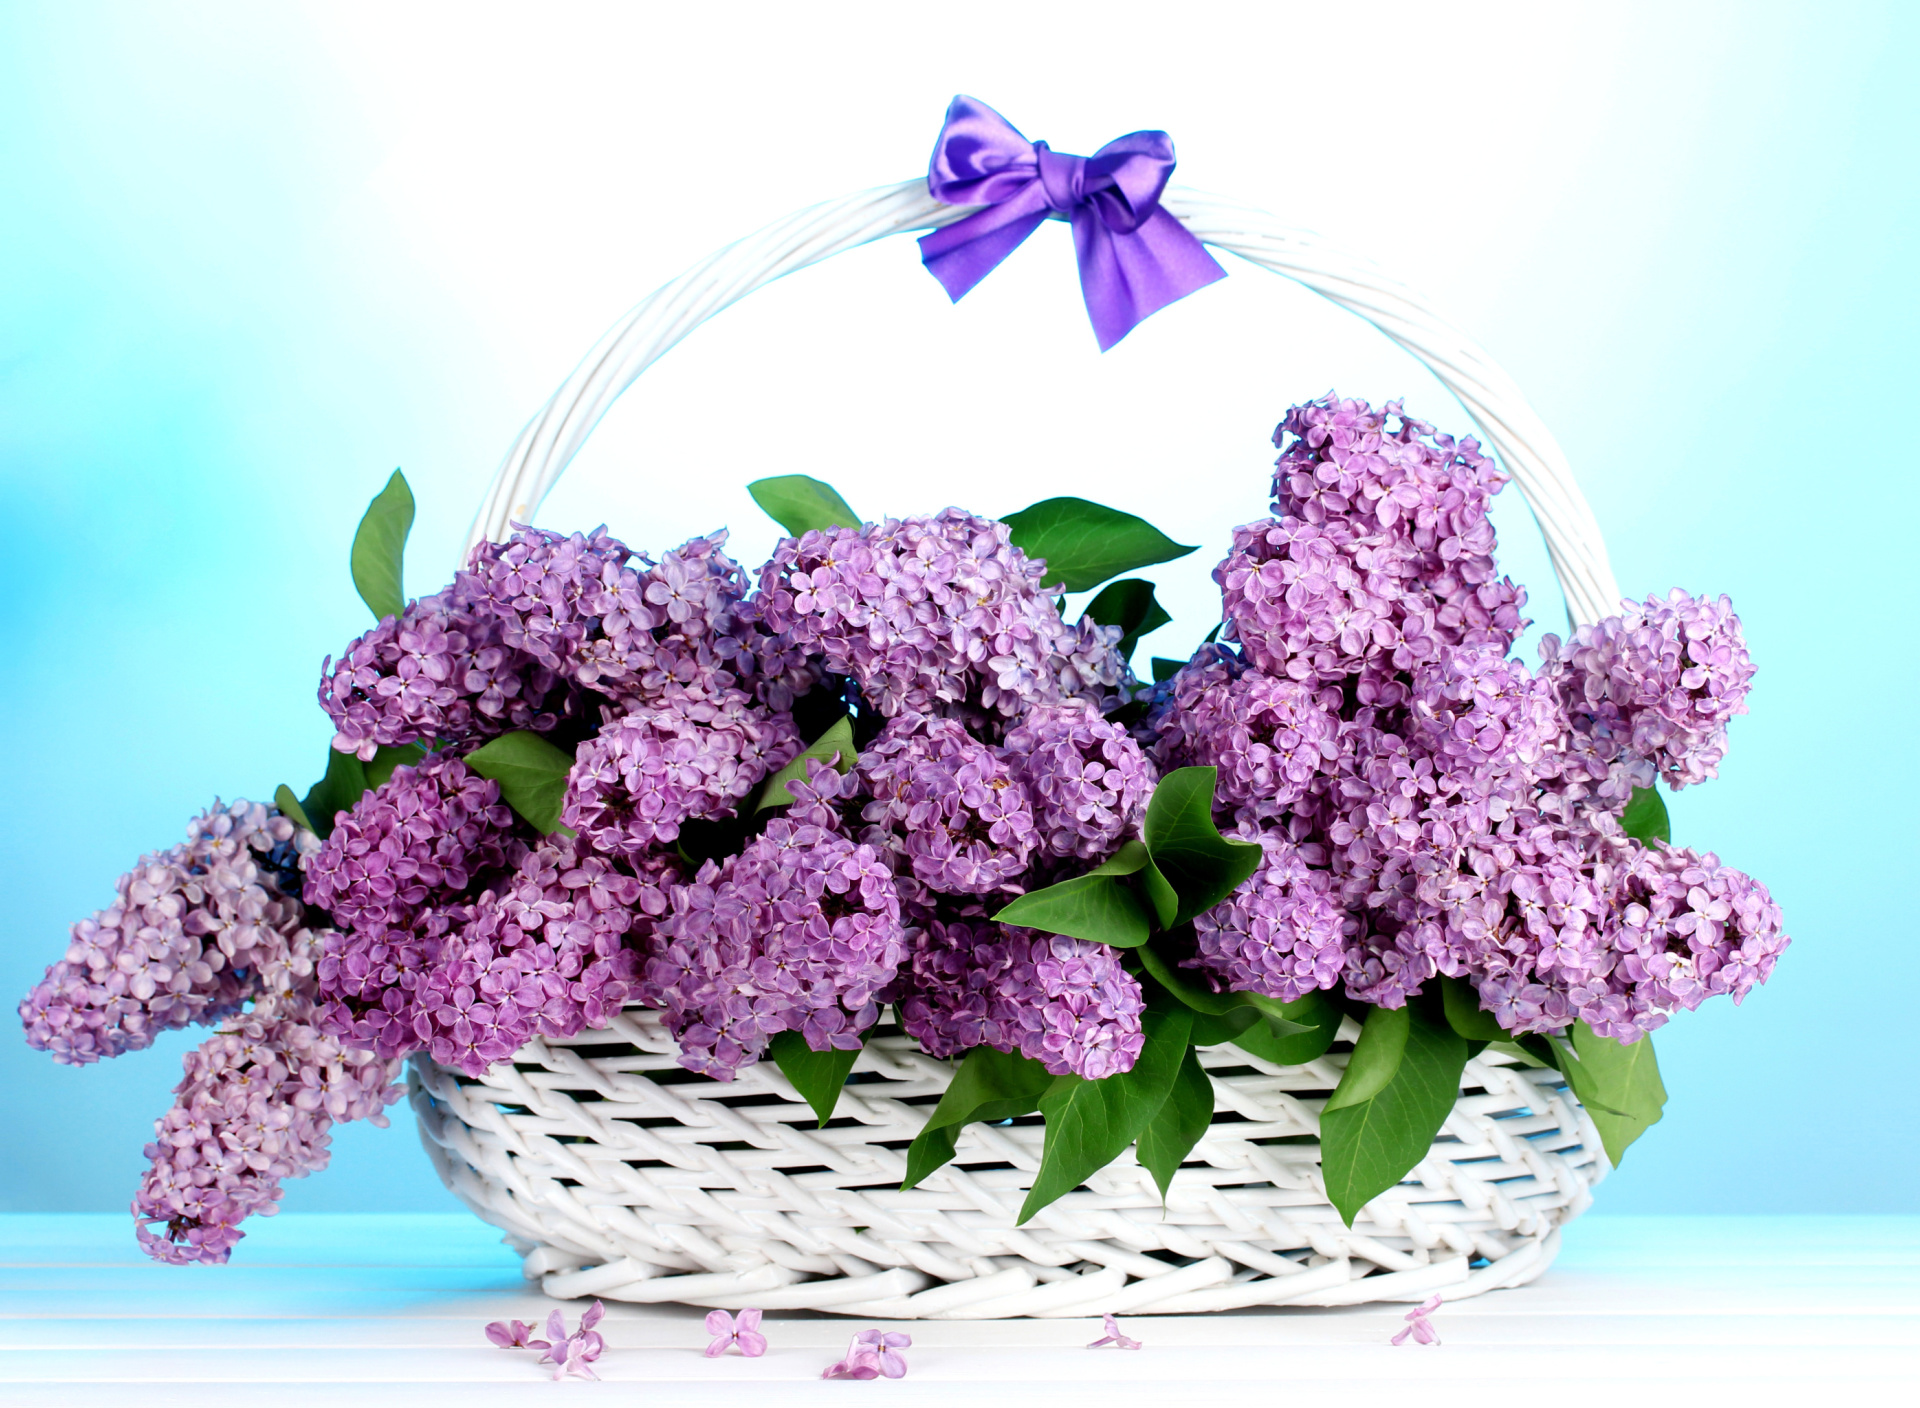 Sfondi Baskets with lilac flowers 1920x1408